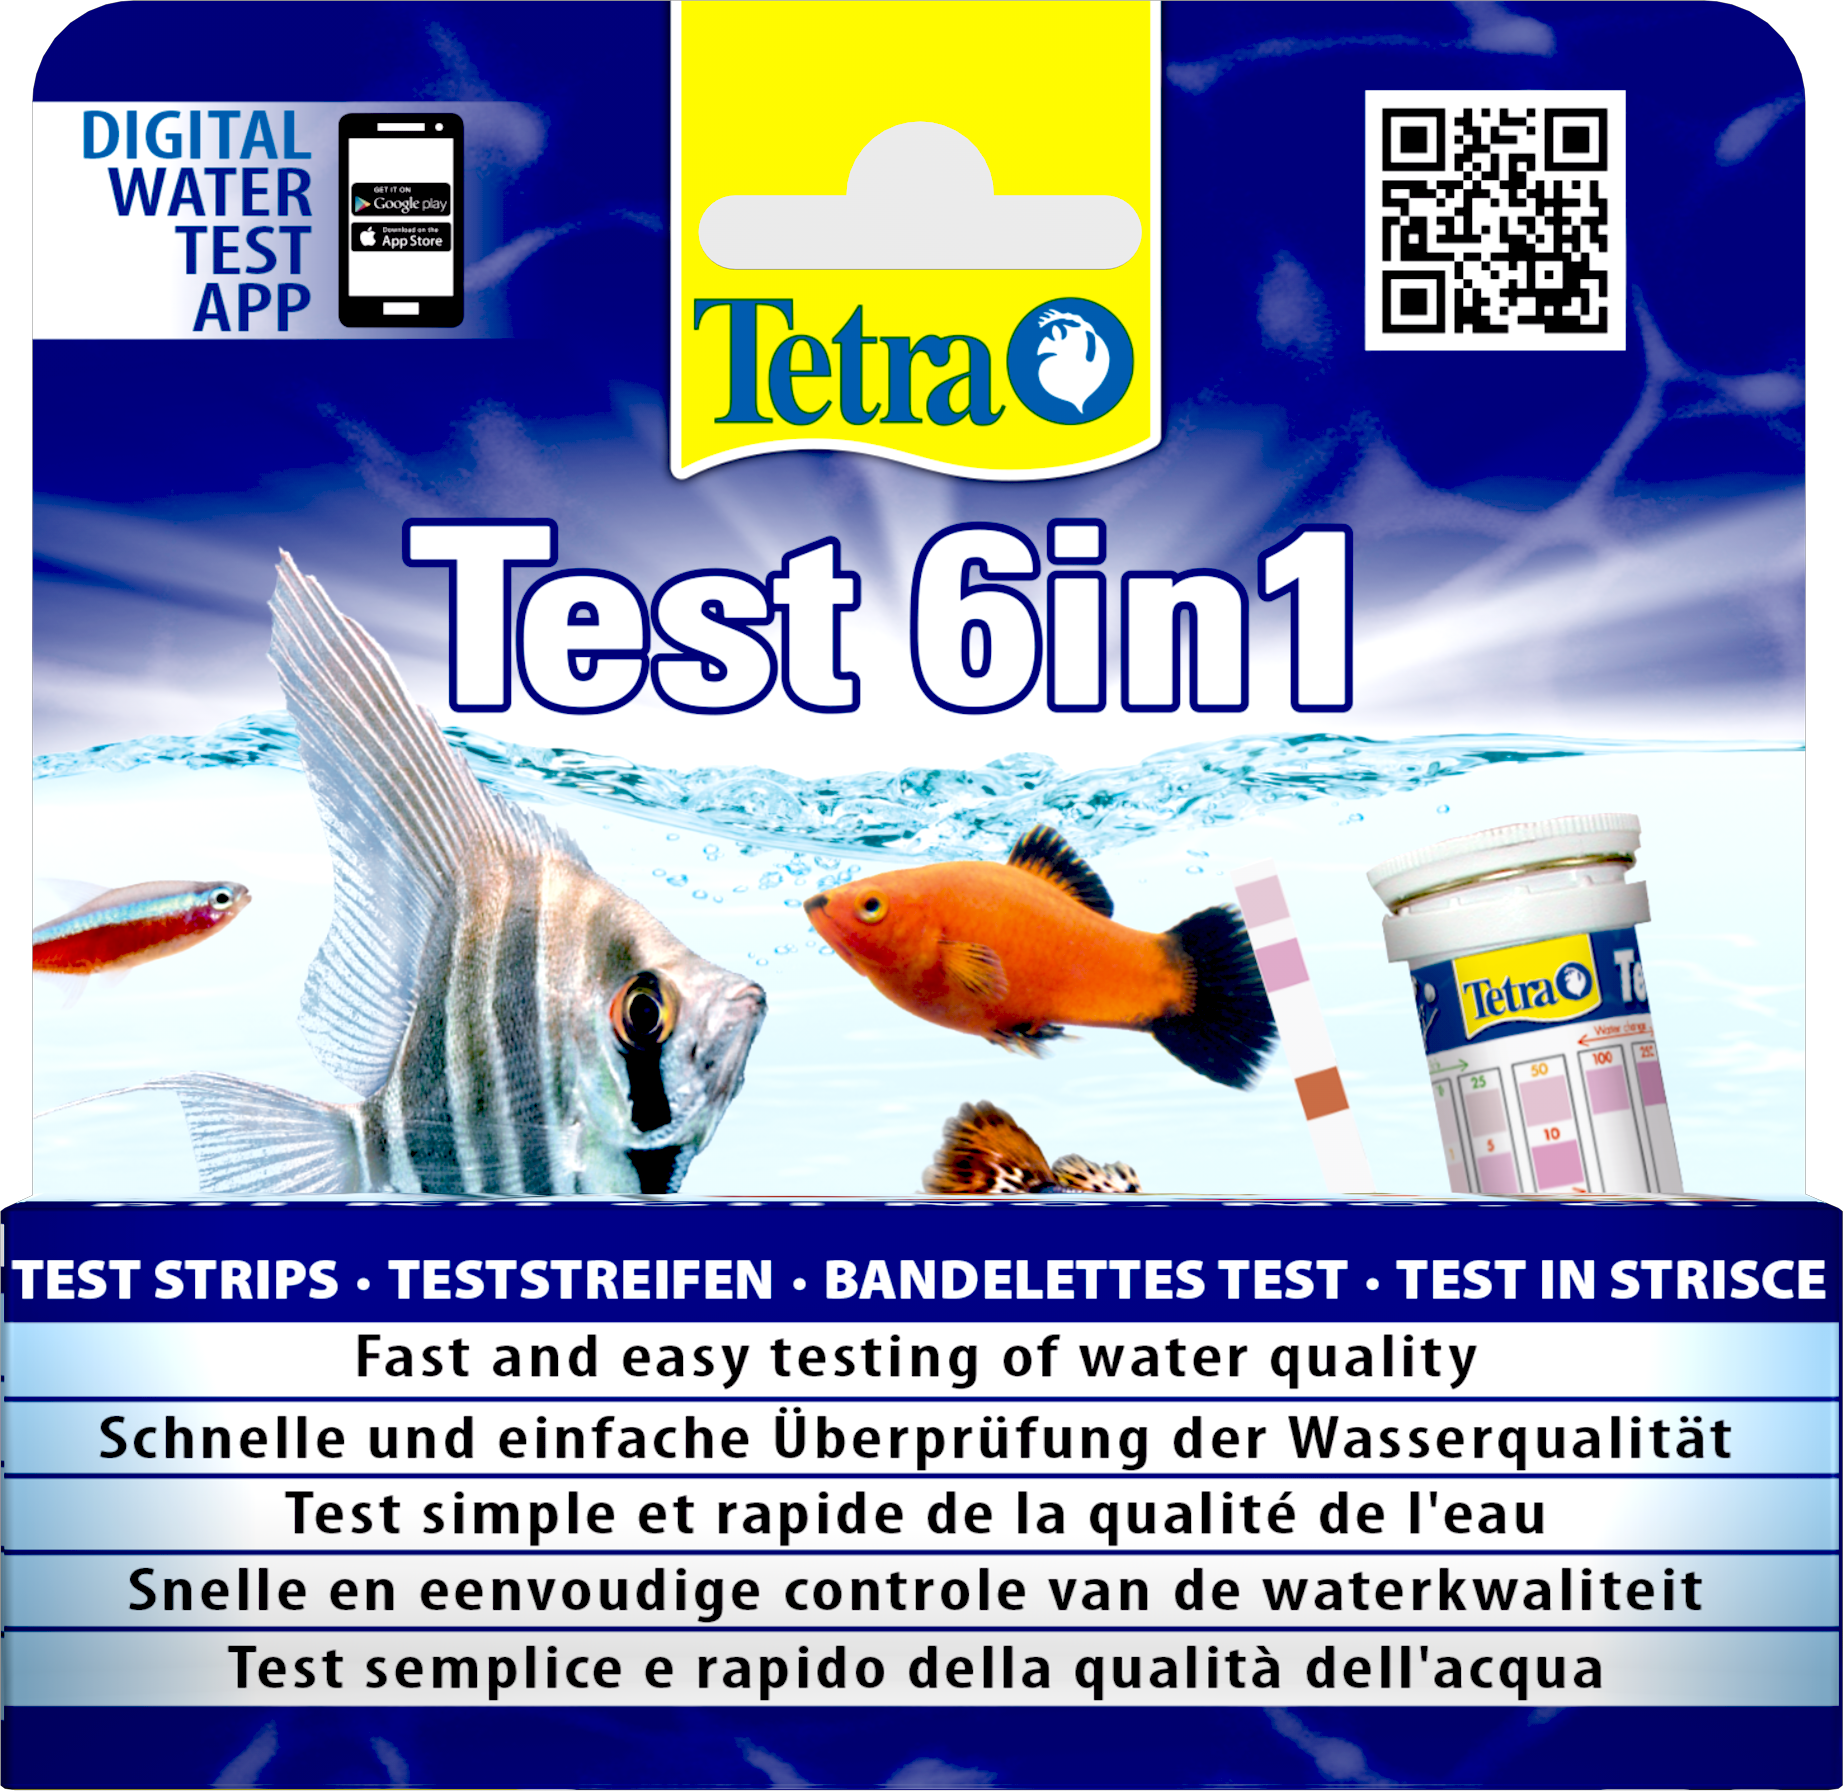 elke dag Zielig commando Tetra Test 6in1: Tetra